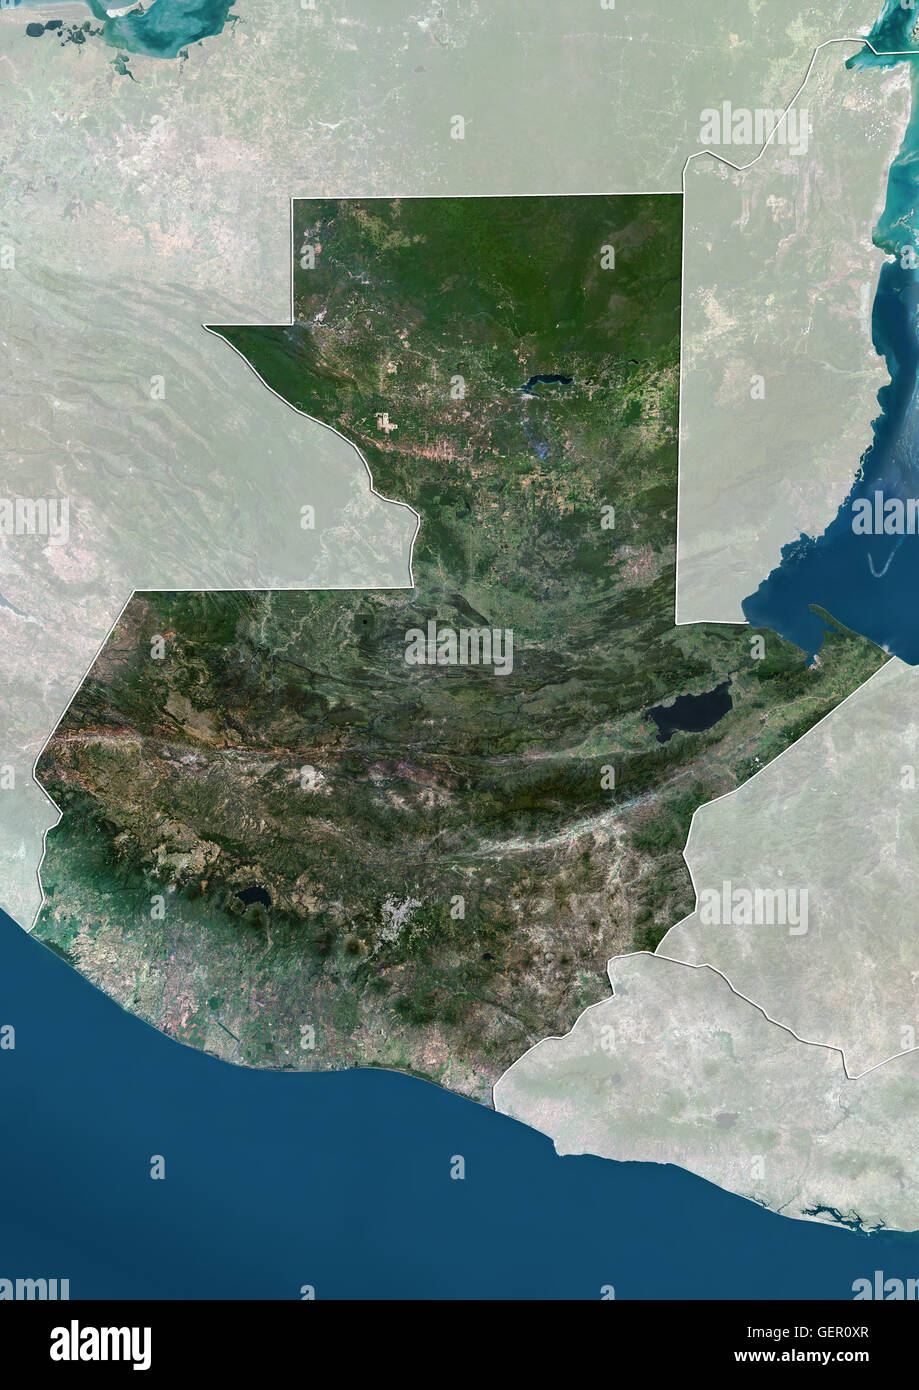 Satellitenansicht von Guatemala (mit Ländergrenzen und Maske). Dieses Bild wurde aus Daten von Landsat-Satelliten erworben erstellt. Stockfoto